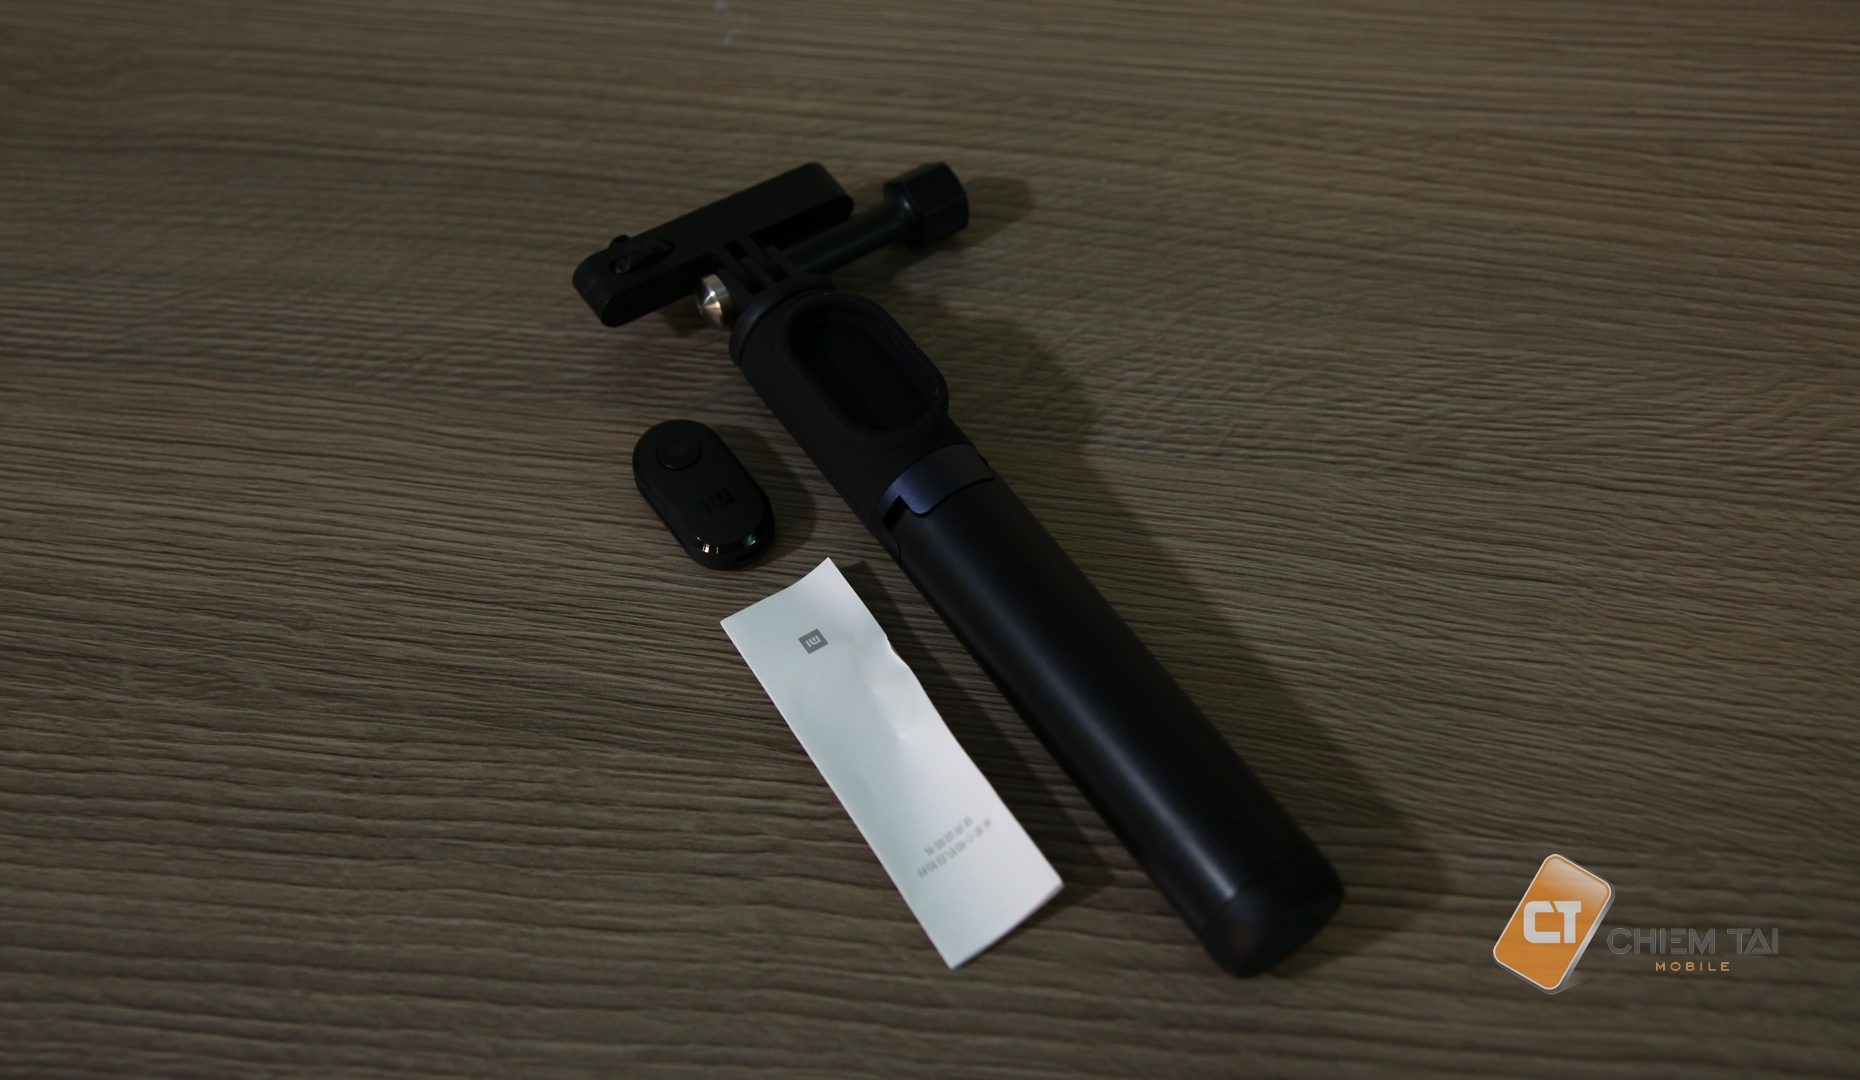 Gậy selfie mini tripod Xiaomi cho camera hành động Mijia